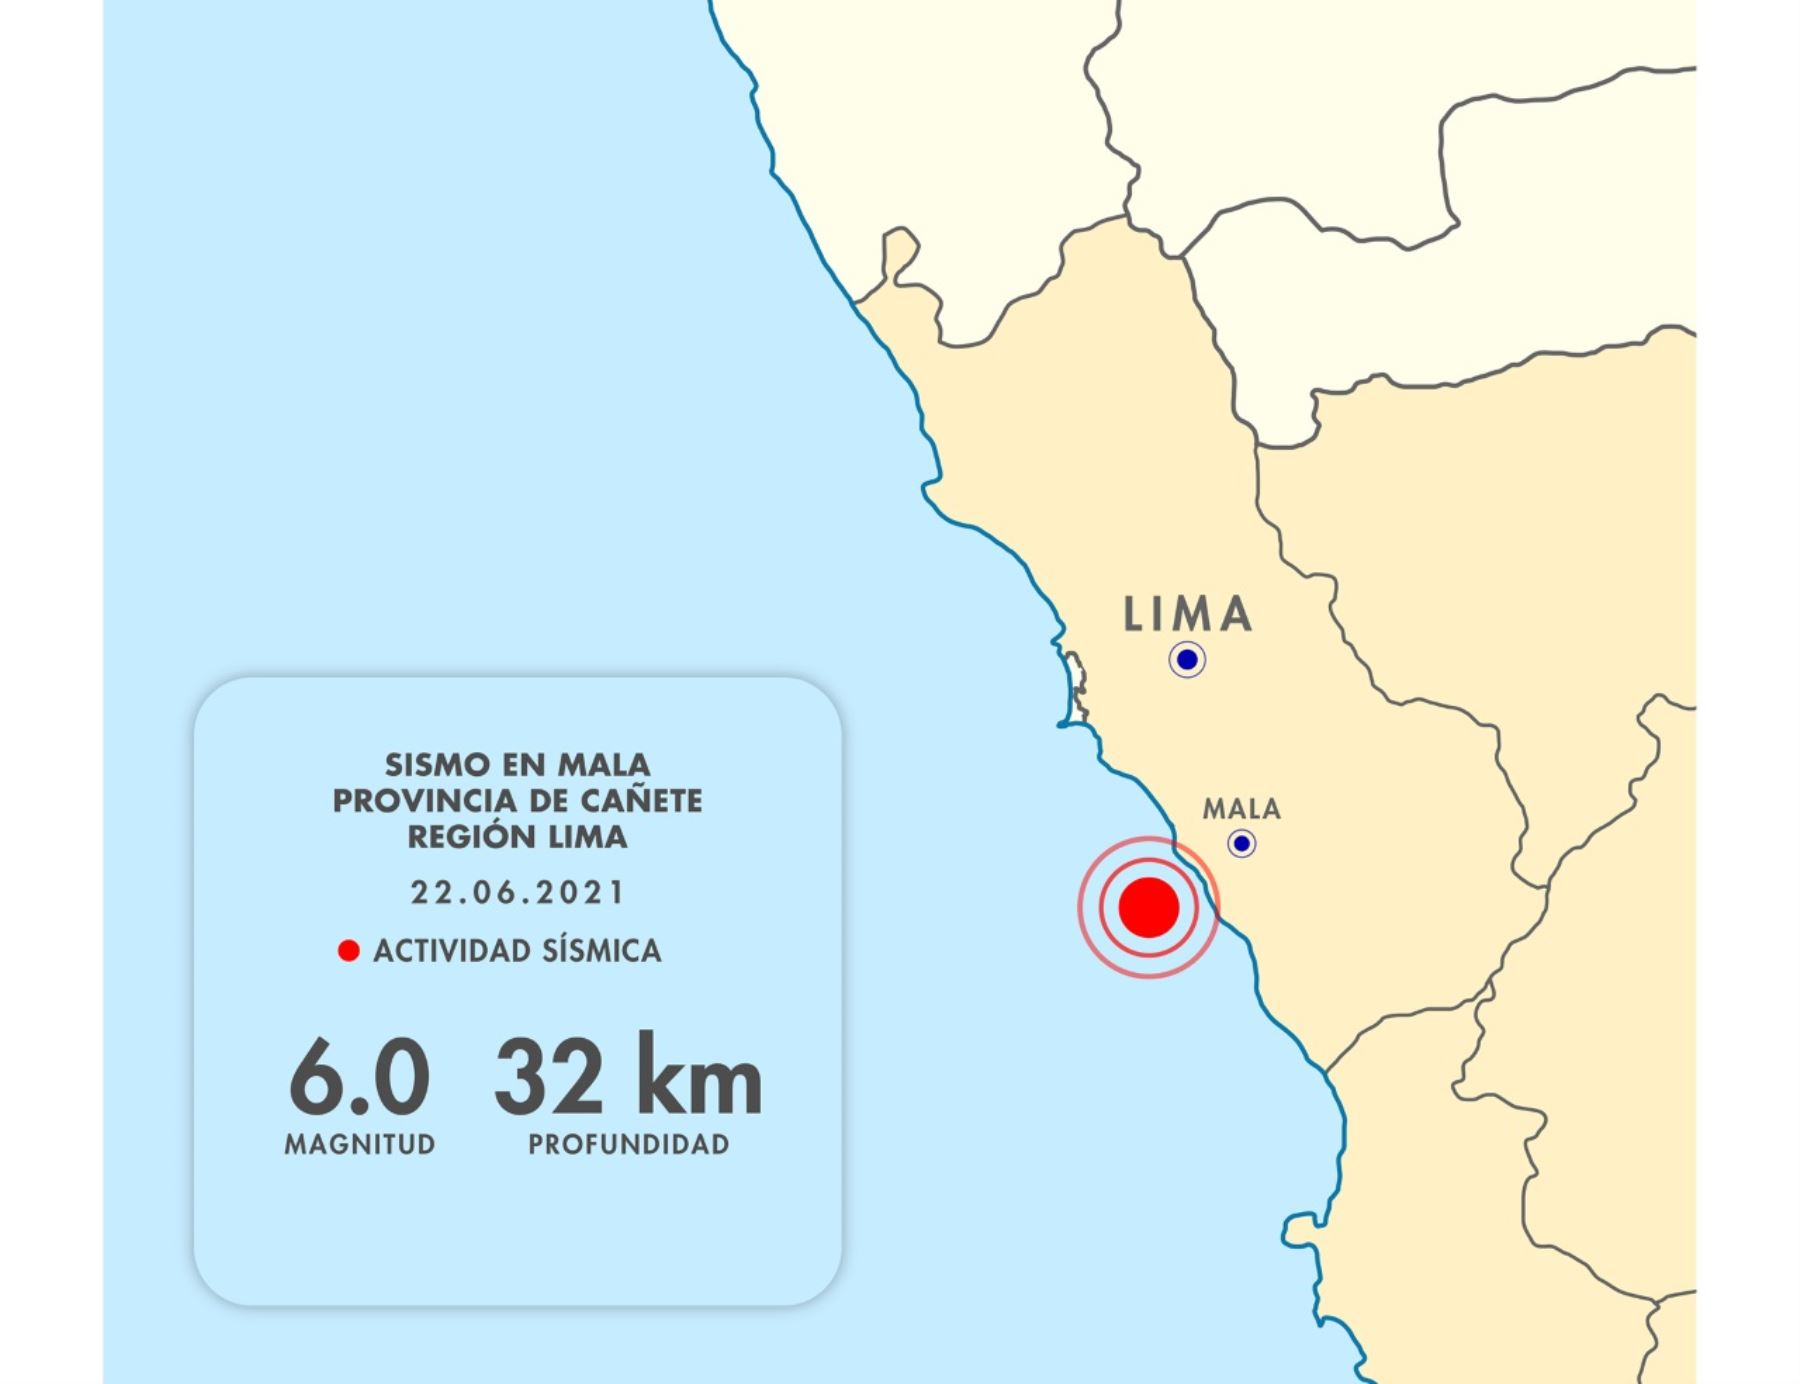 El sismo de magnitud 6.0 y sus réplicas registradas en el distrito de Mala, provincia limeña Cañete, tienen origen en la fricción de placas de Nazca y Sudamericana